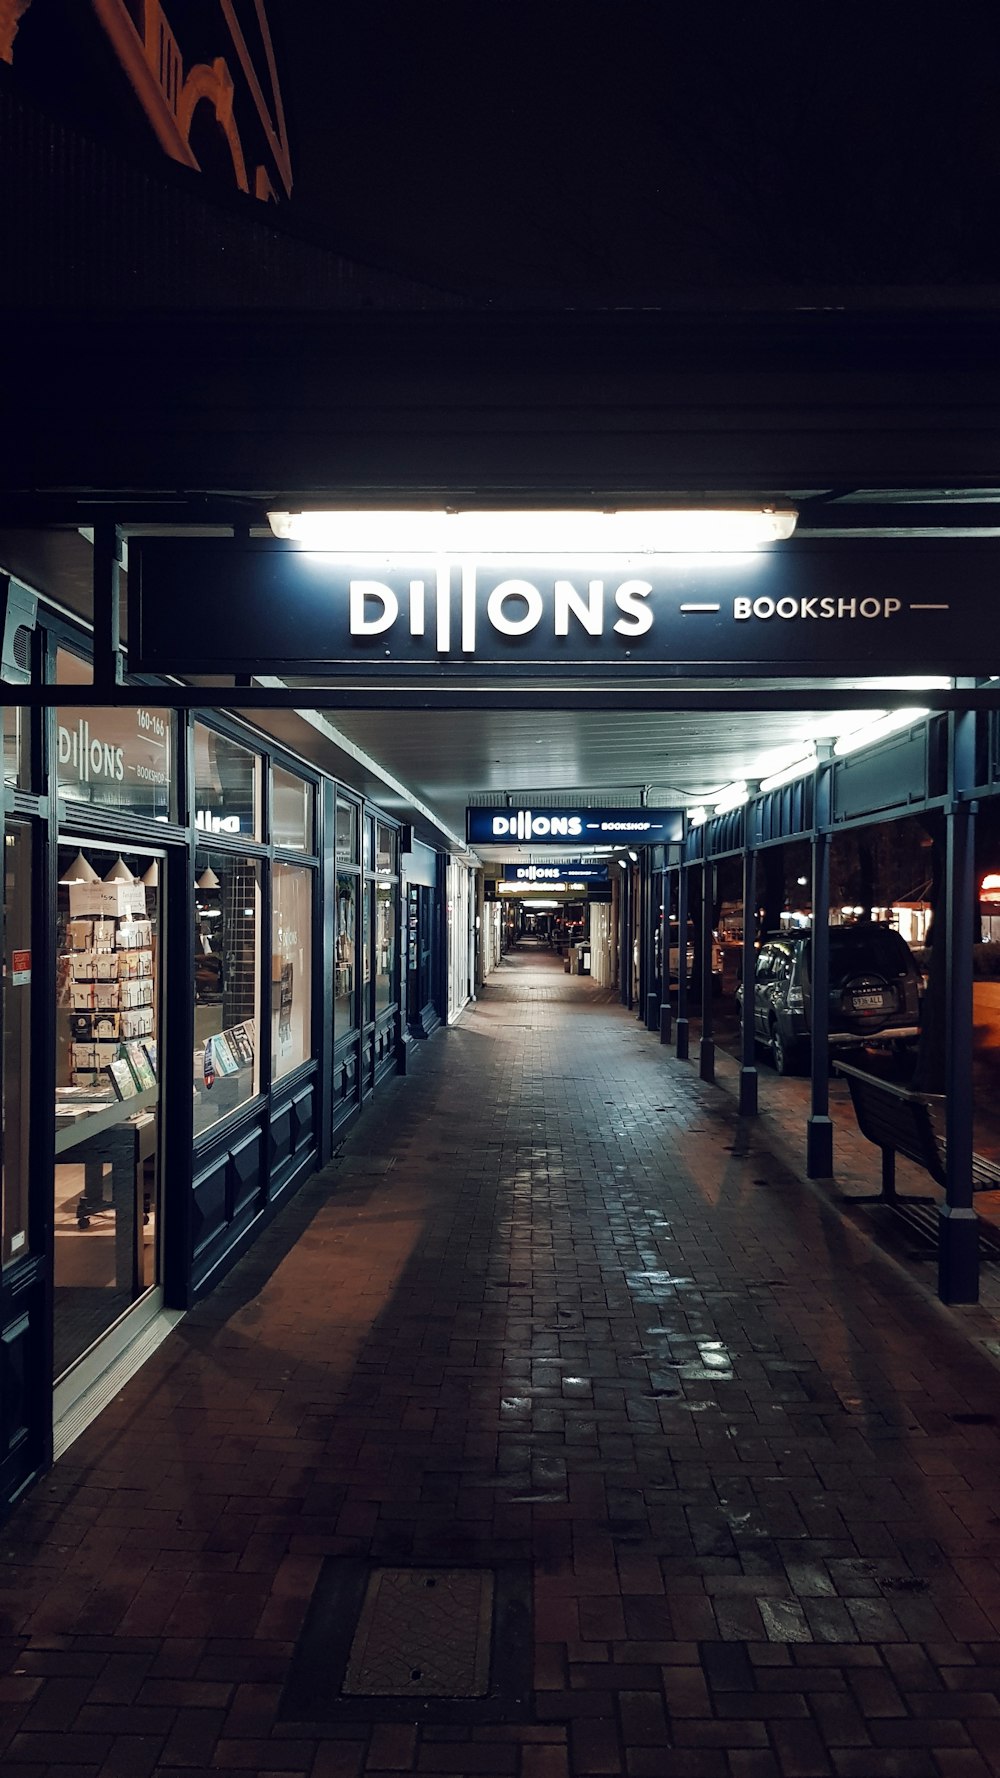 Dillons bookshop front